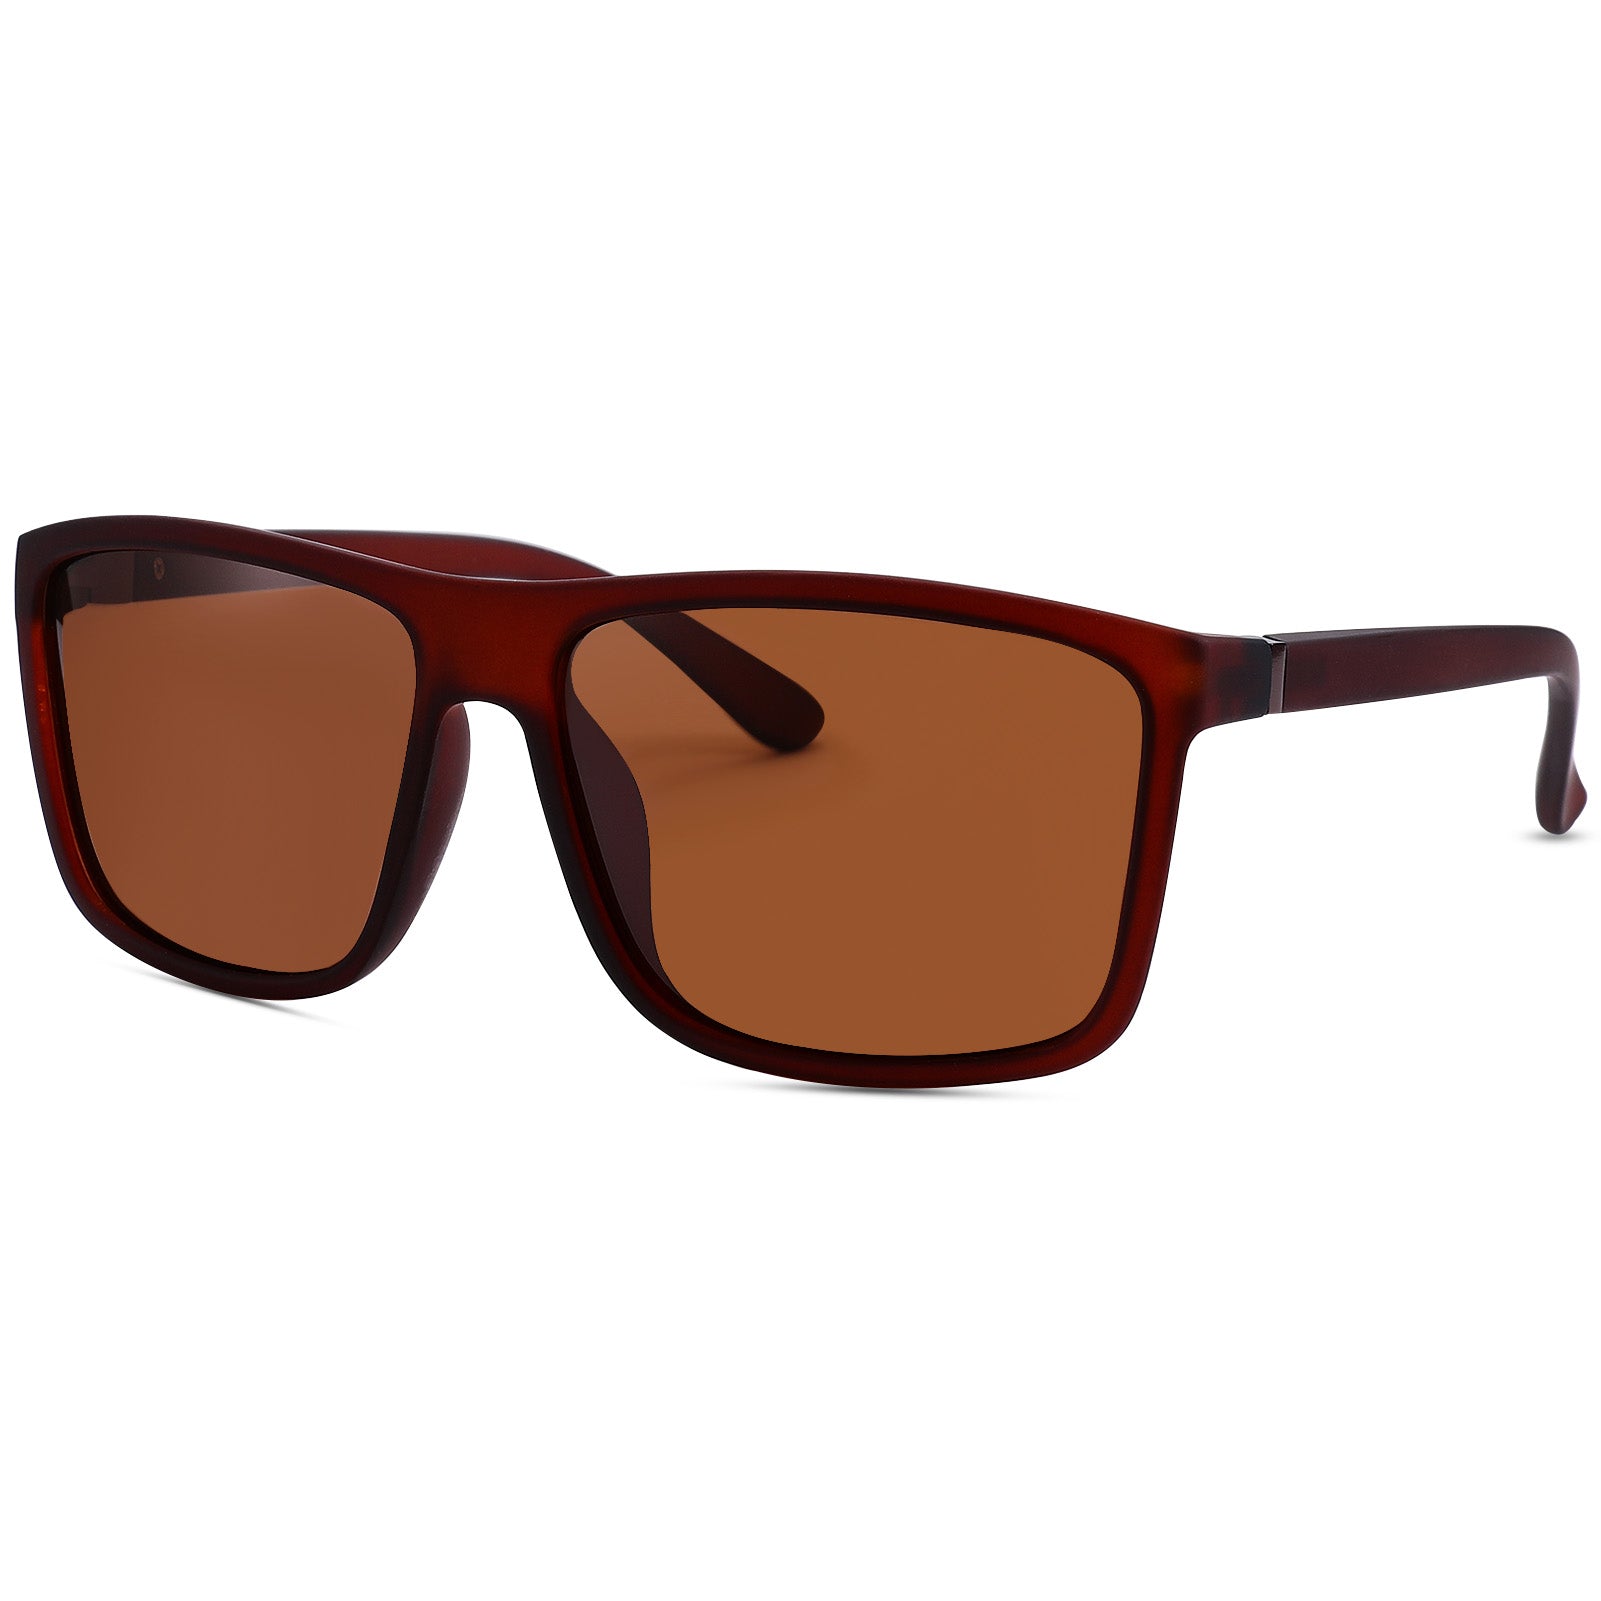 Buy Polarized Sunglasses for Men Driving Rectangular Vintage